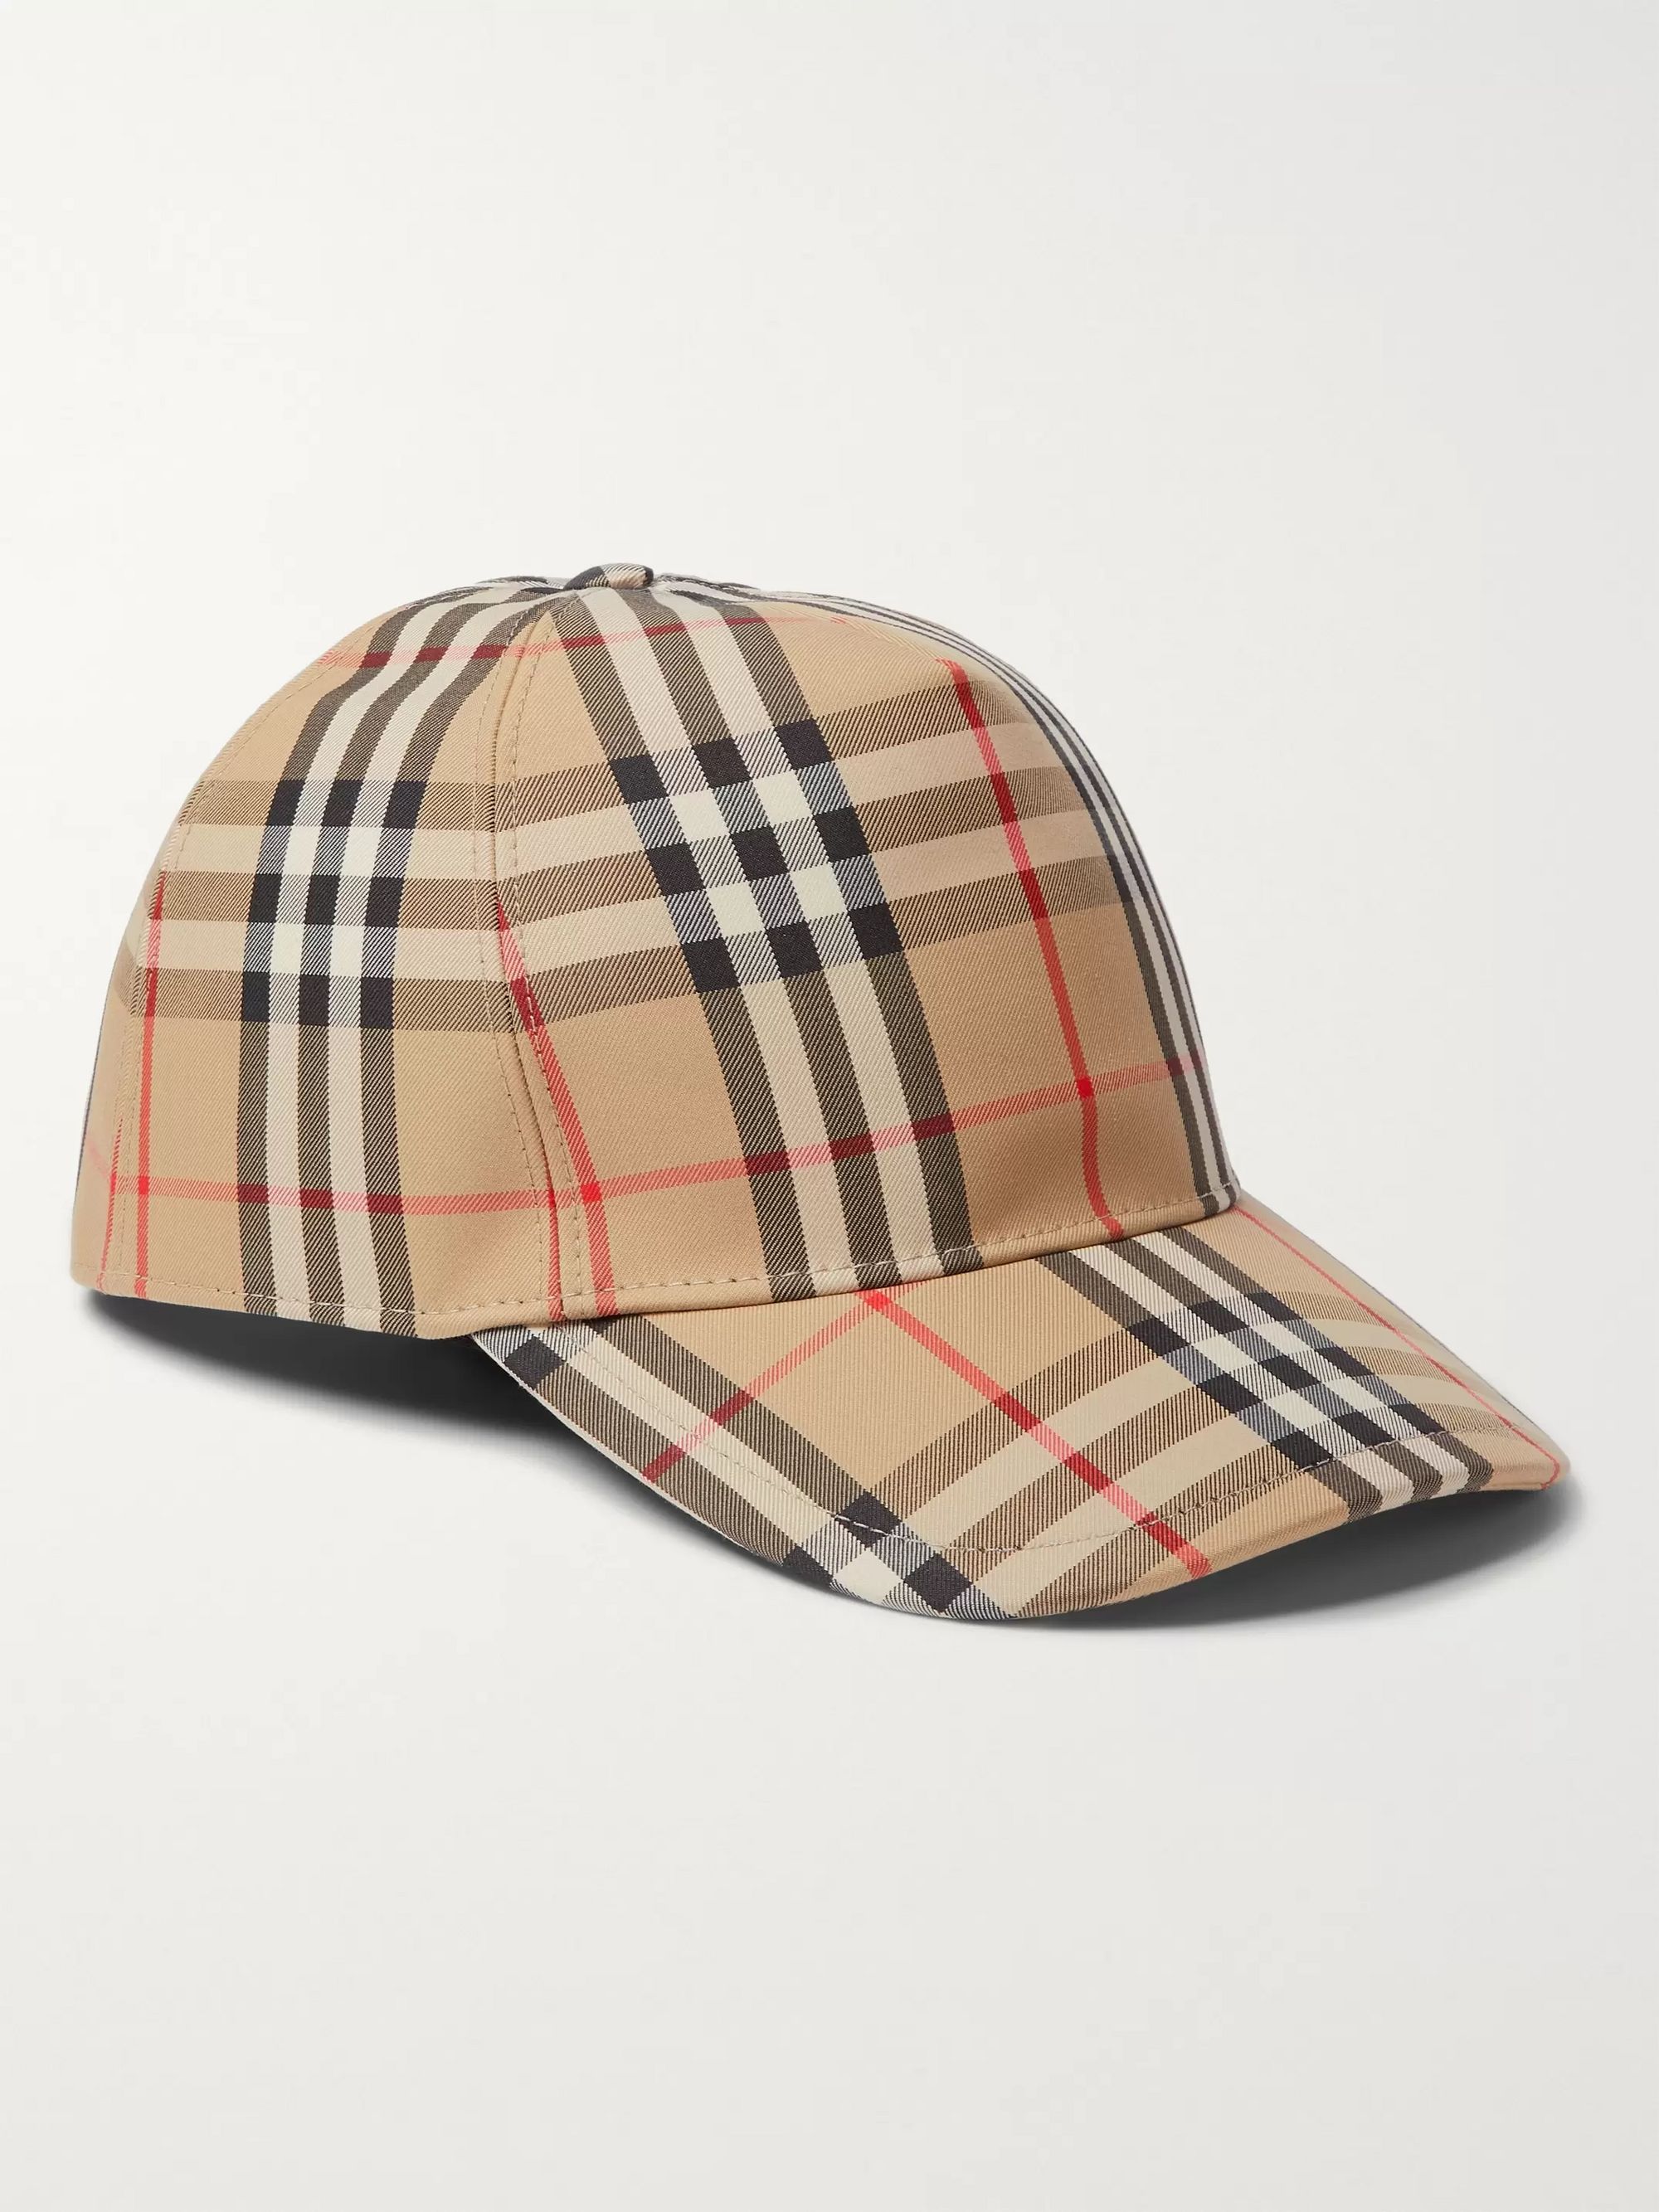 mens burberry hats caps